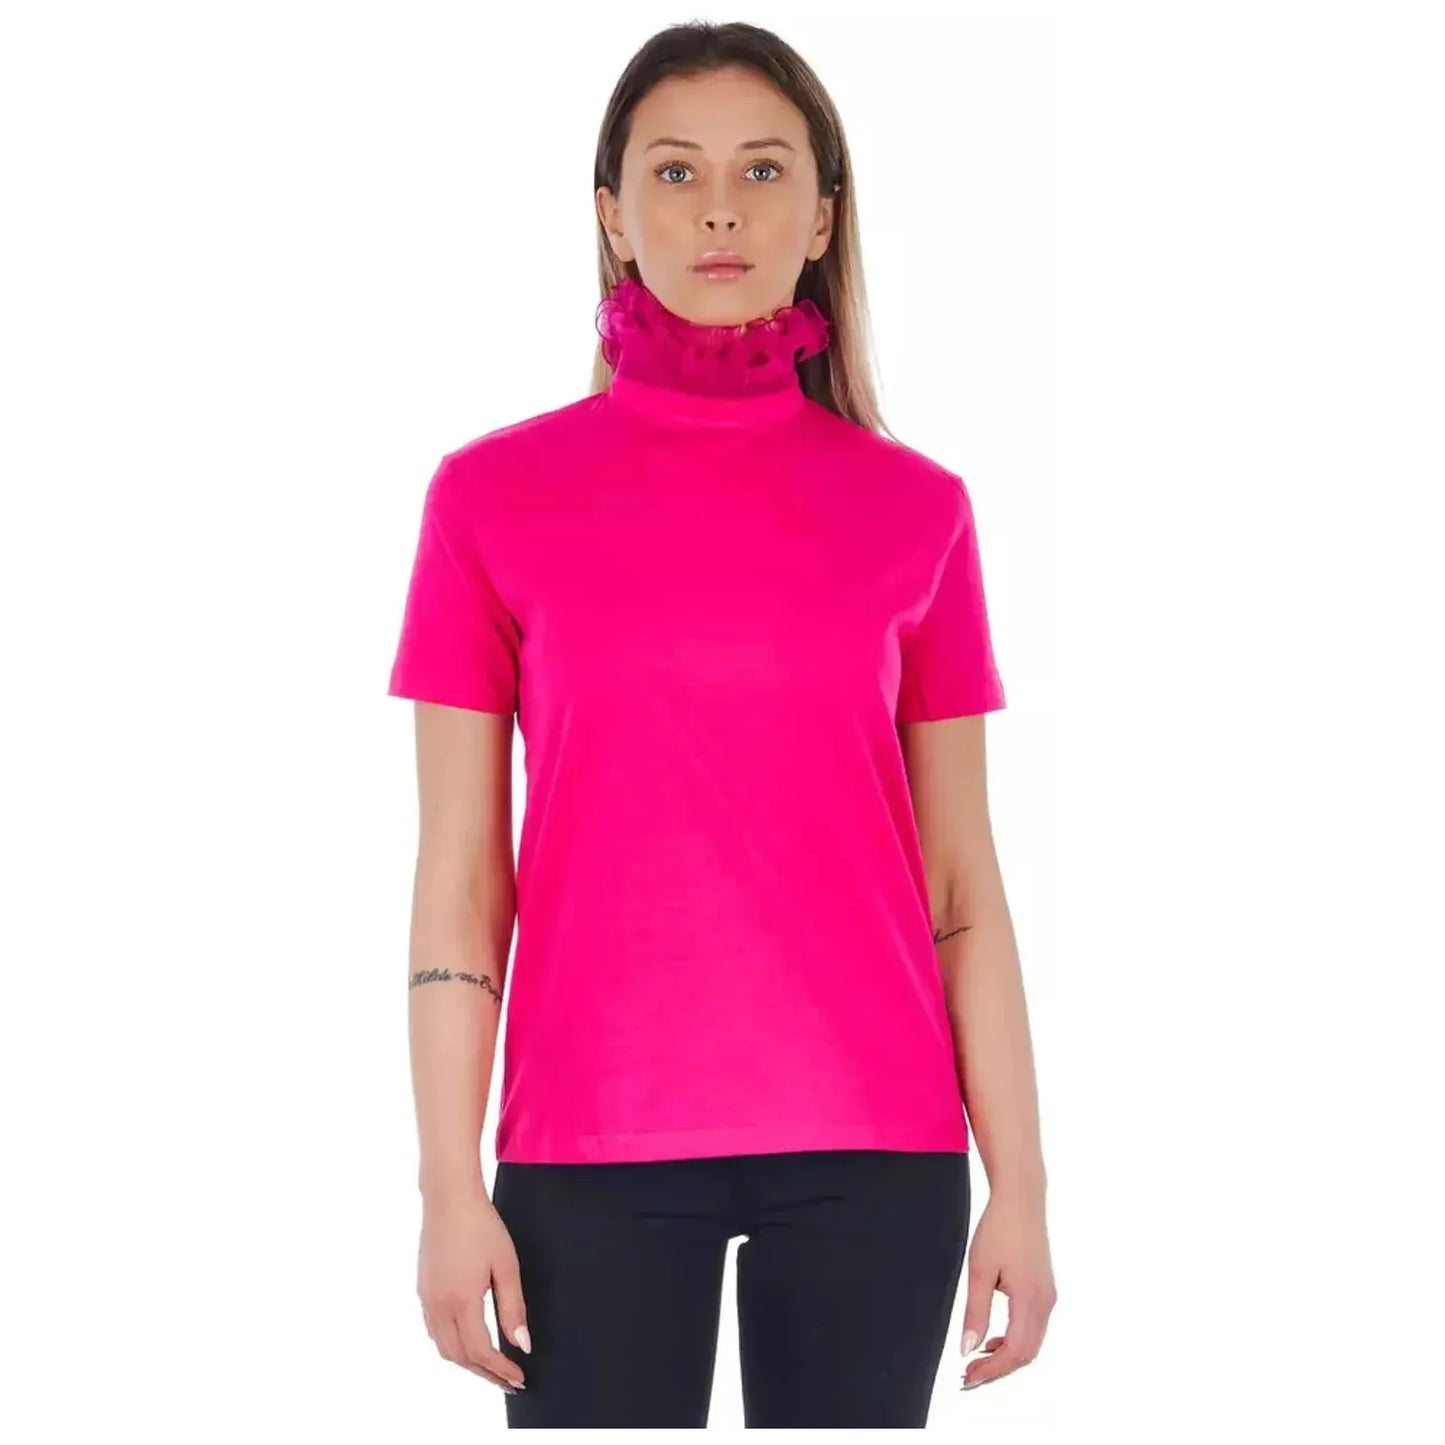 Frankie Morello Chic Pink Lace-Back High Neck Tee proseviolet-tops-t-shirt-2 product-21717-1848095958-21-2bdef8af-720.webp